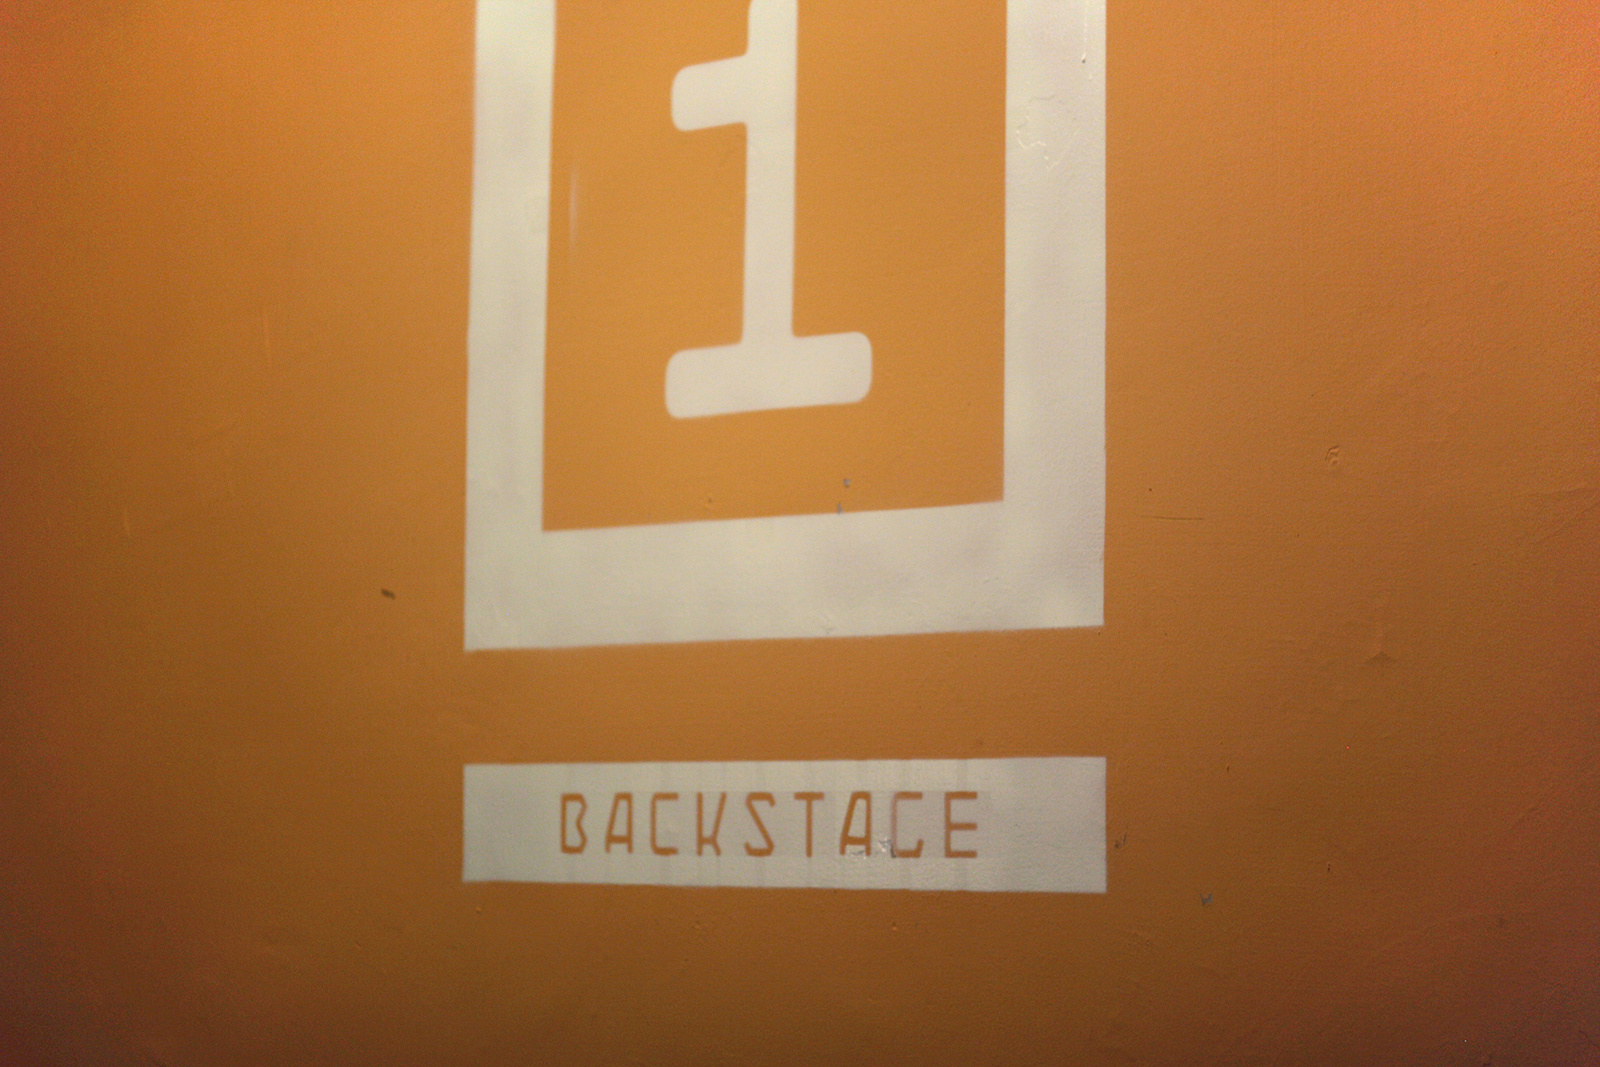 Backstage 2
